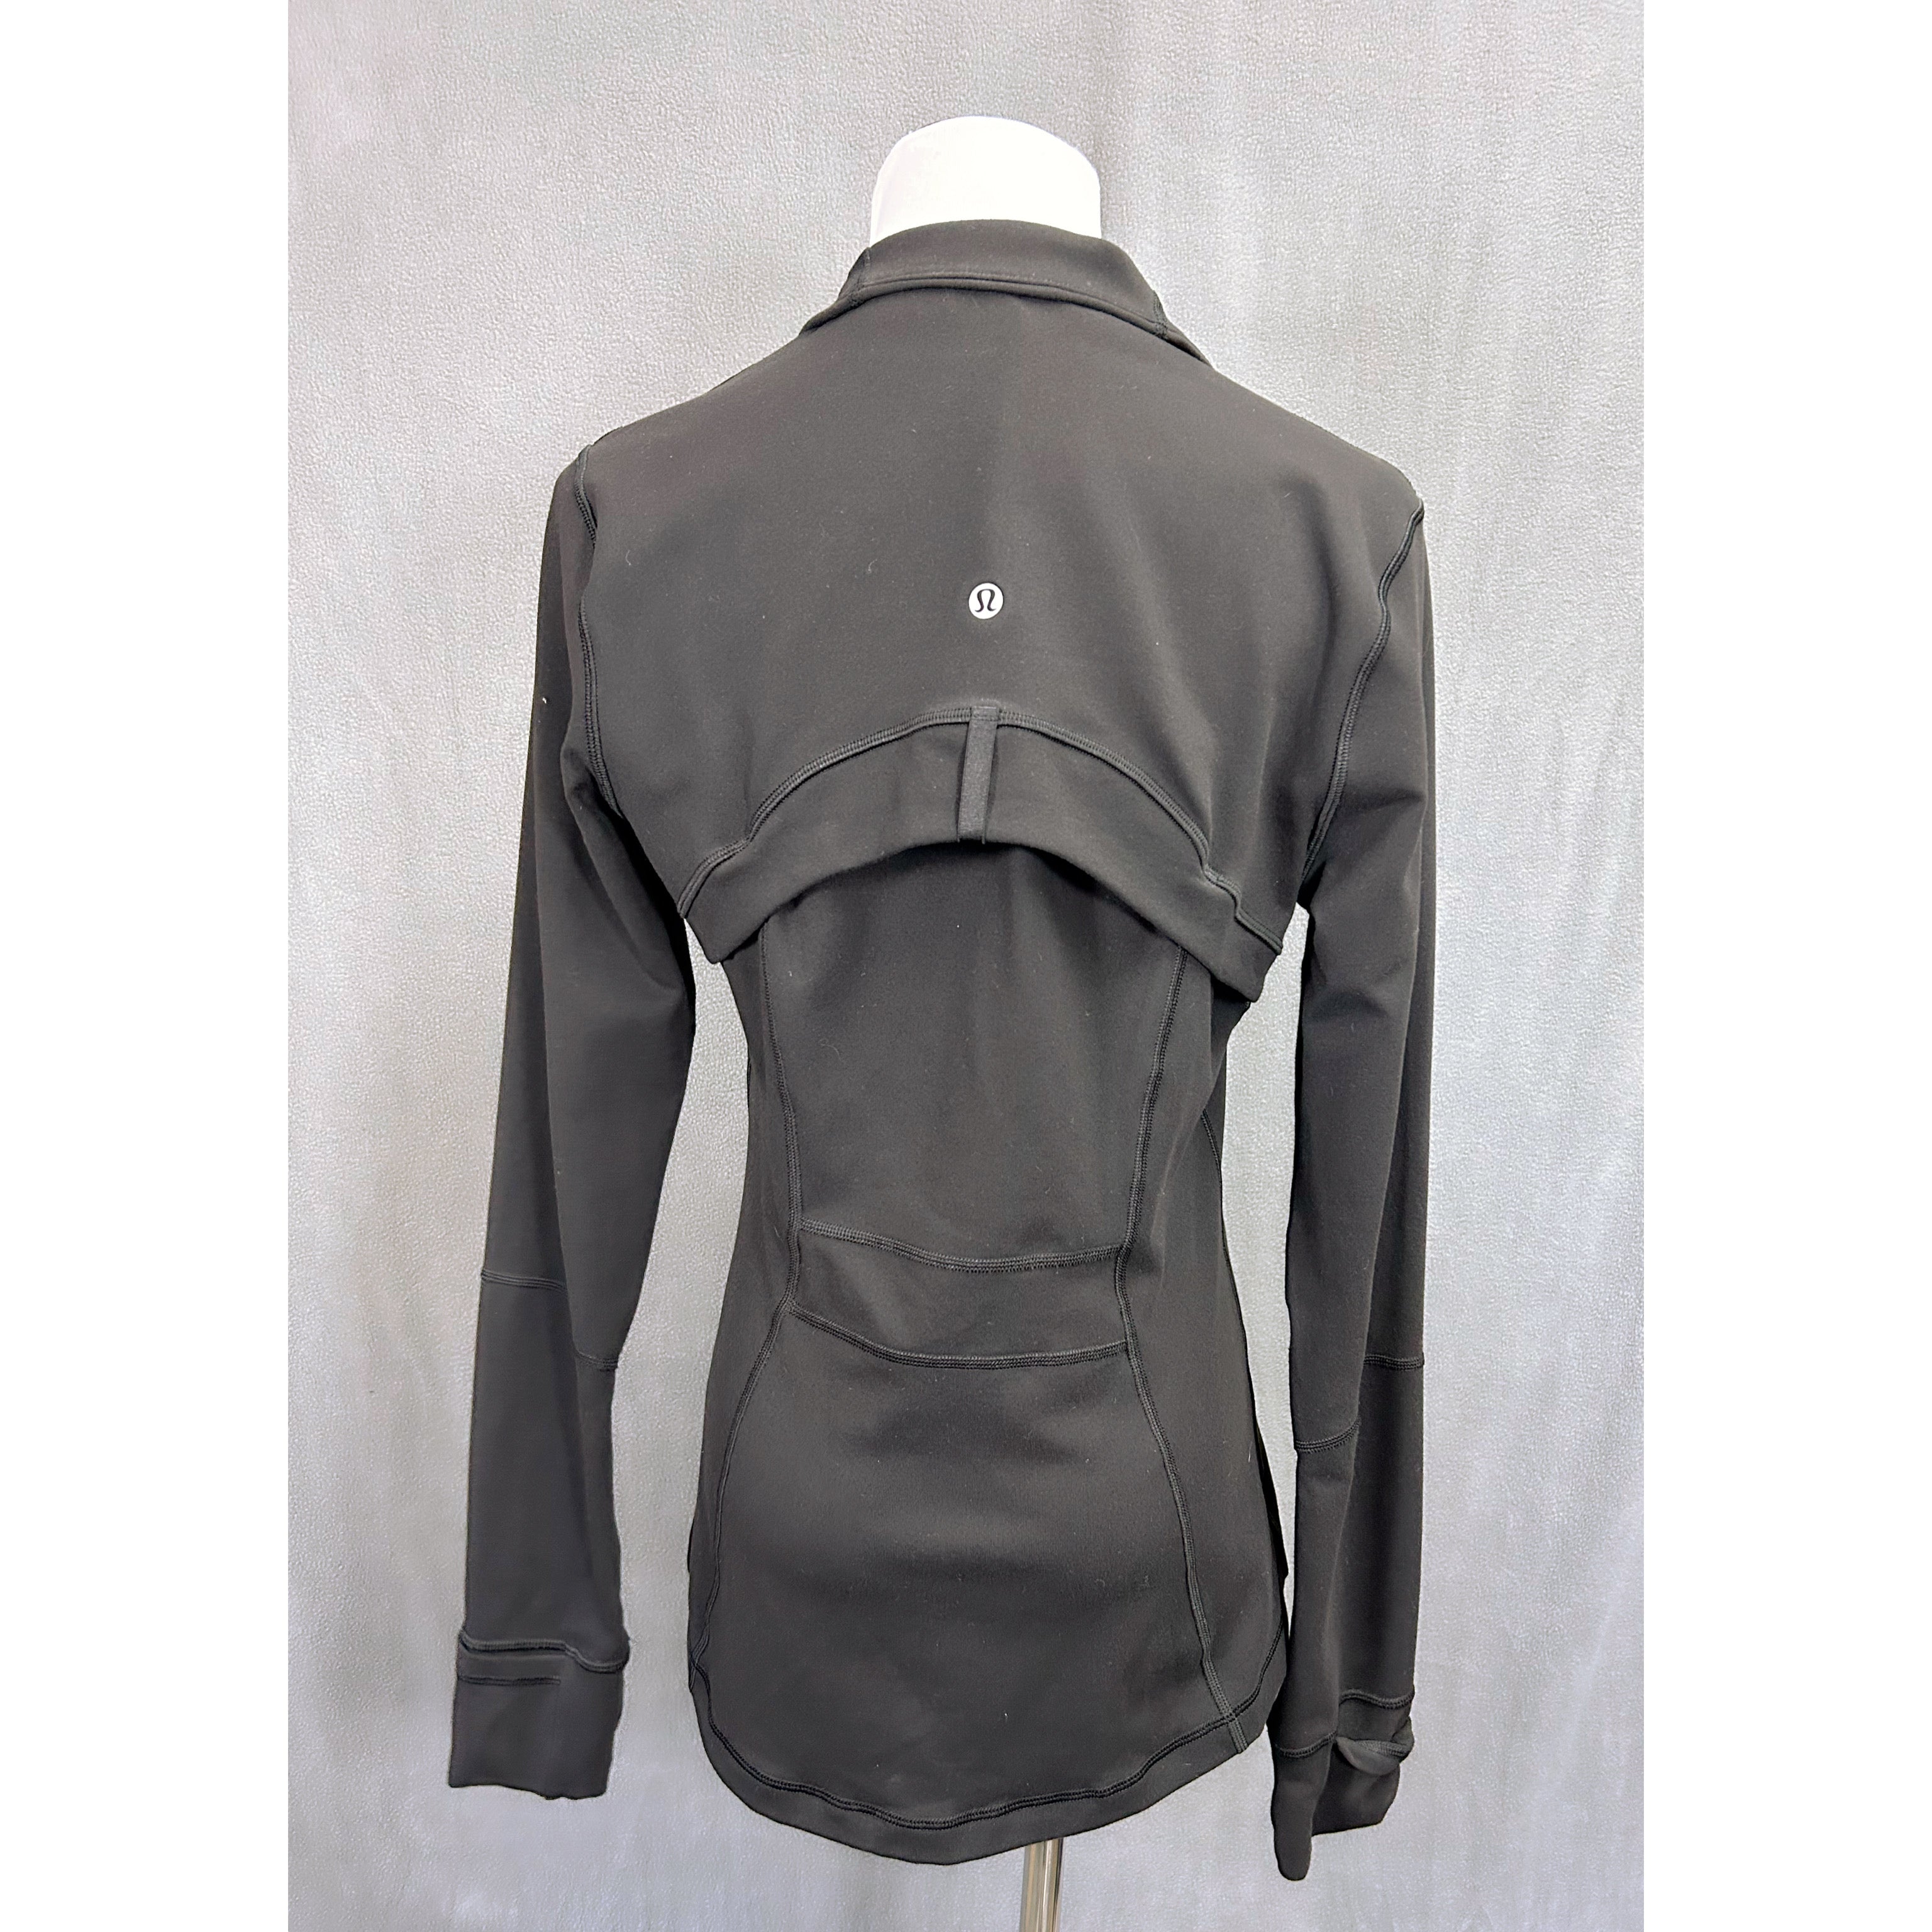 Lululemon black Define jacket, size 8